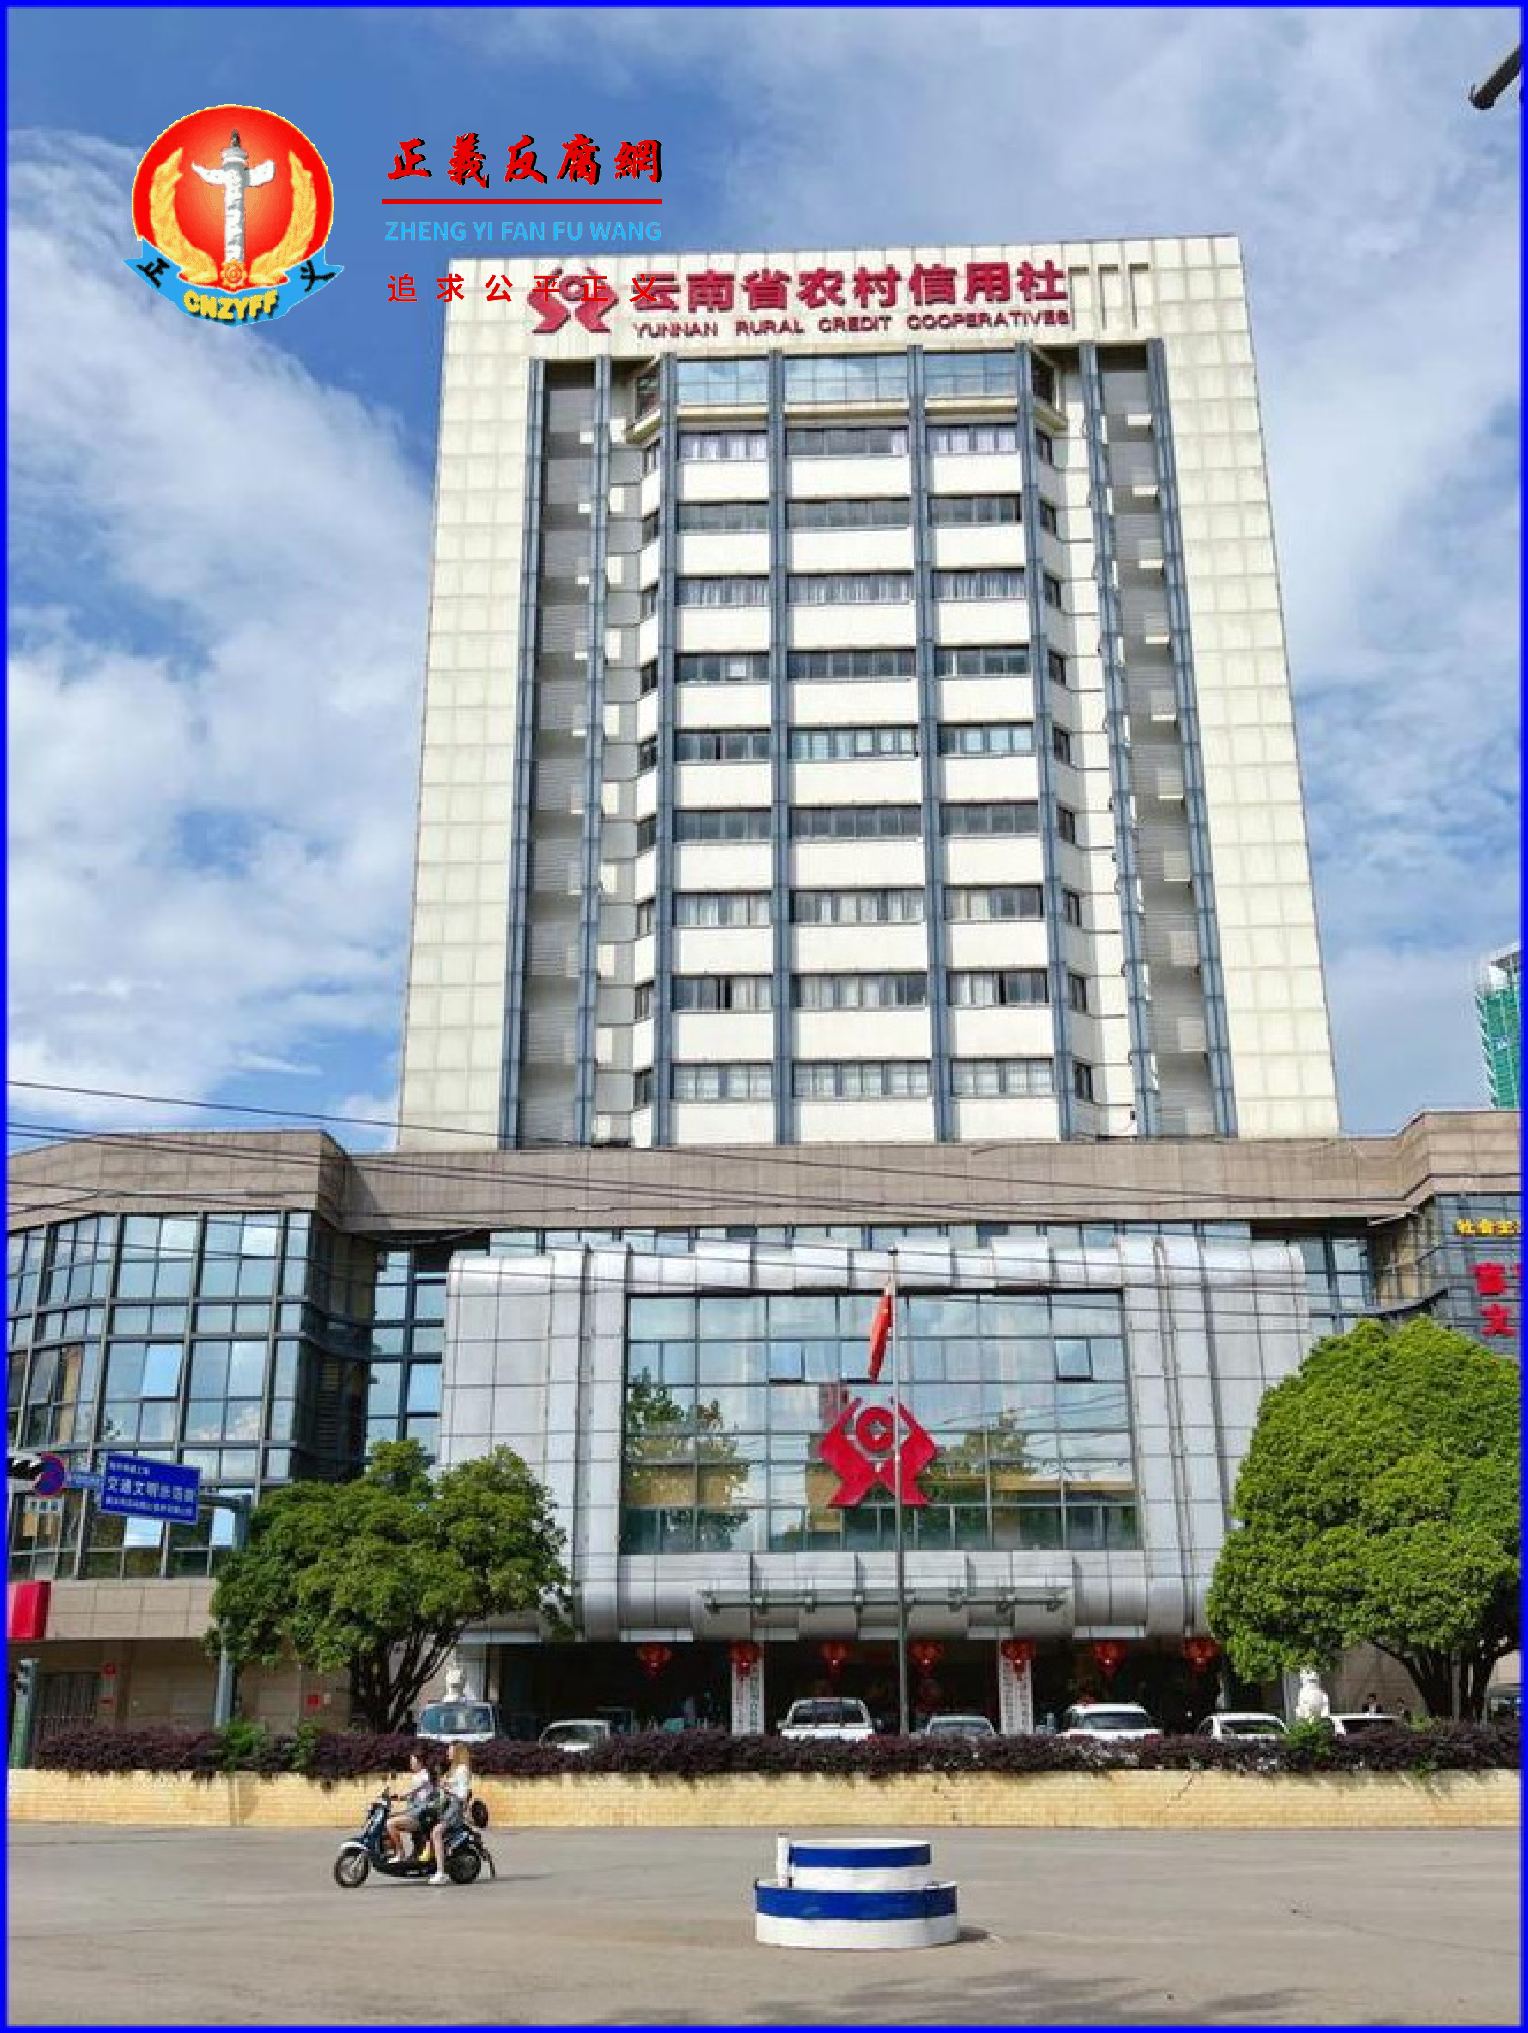 云南宣威市农村信用合作联社办公大楼。.png